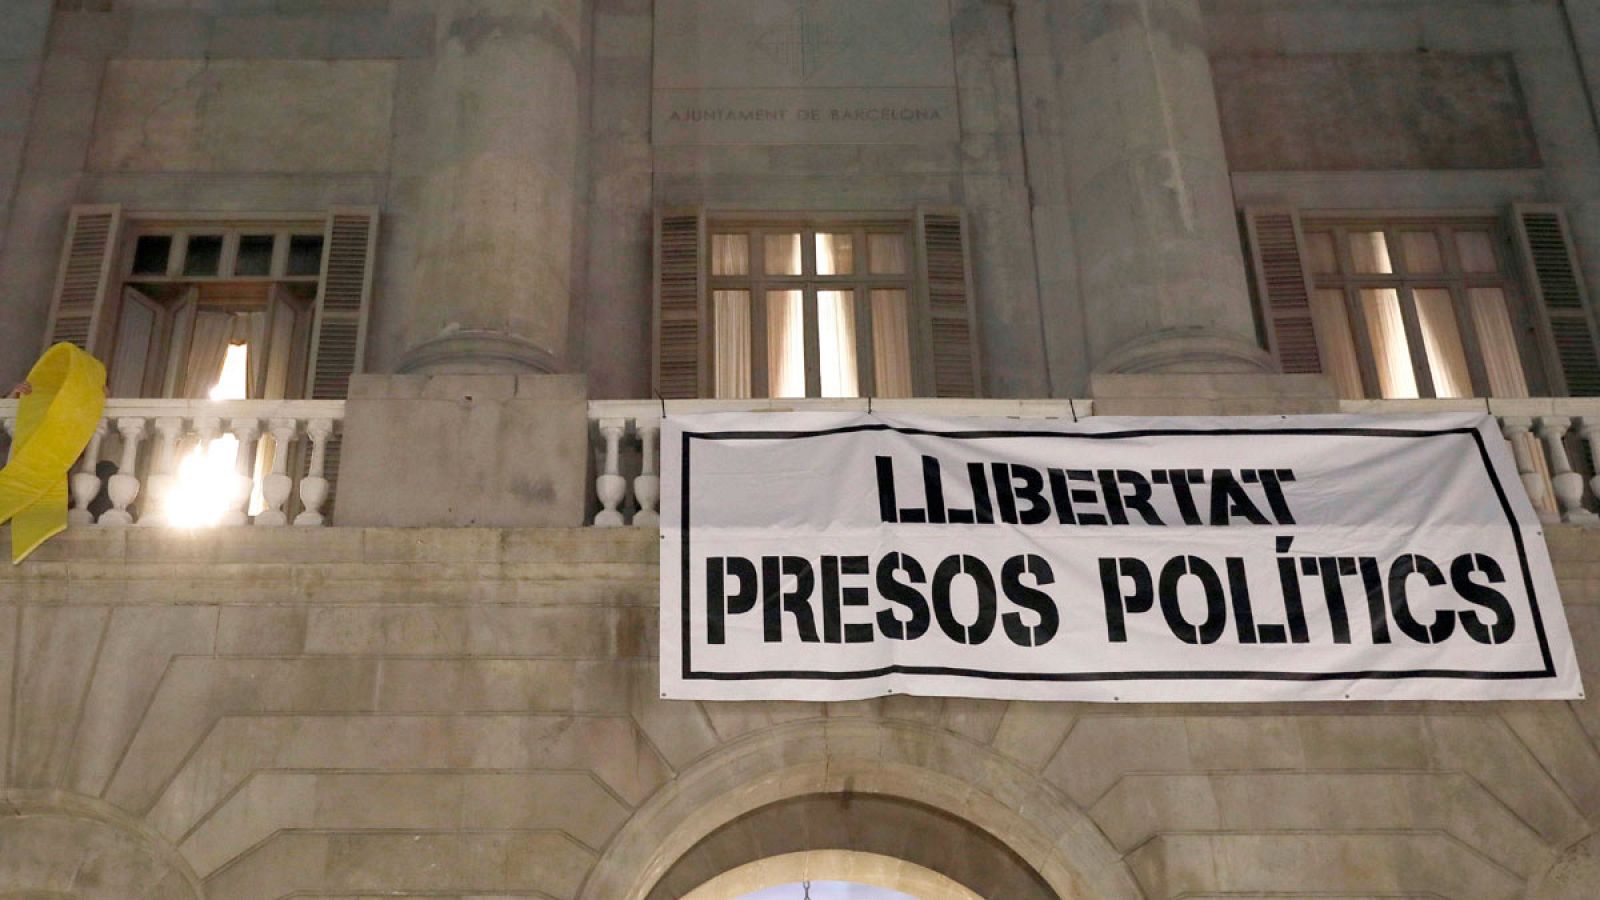 Ayuntamiento de Barcelona, donde cuelga una pancarta que reclama "Libertad Presos Políticos"